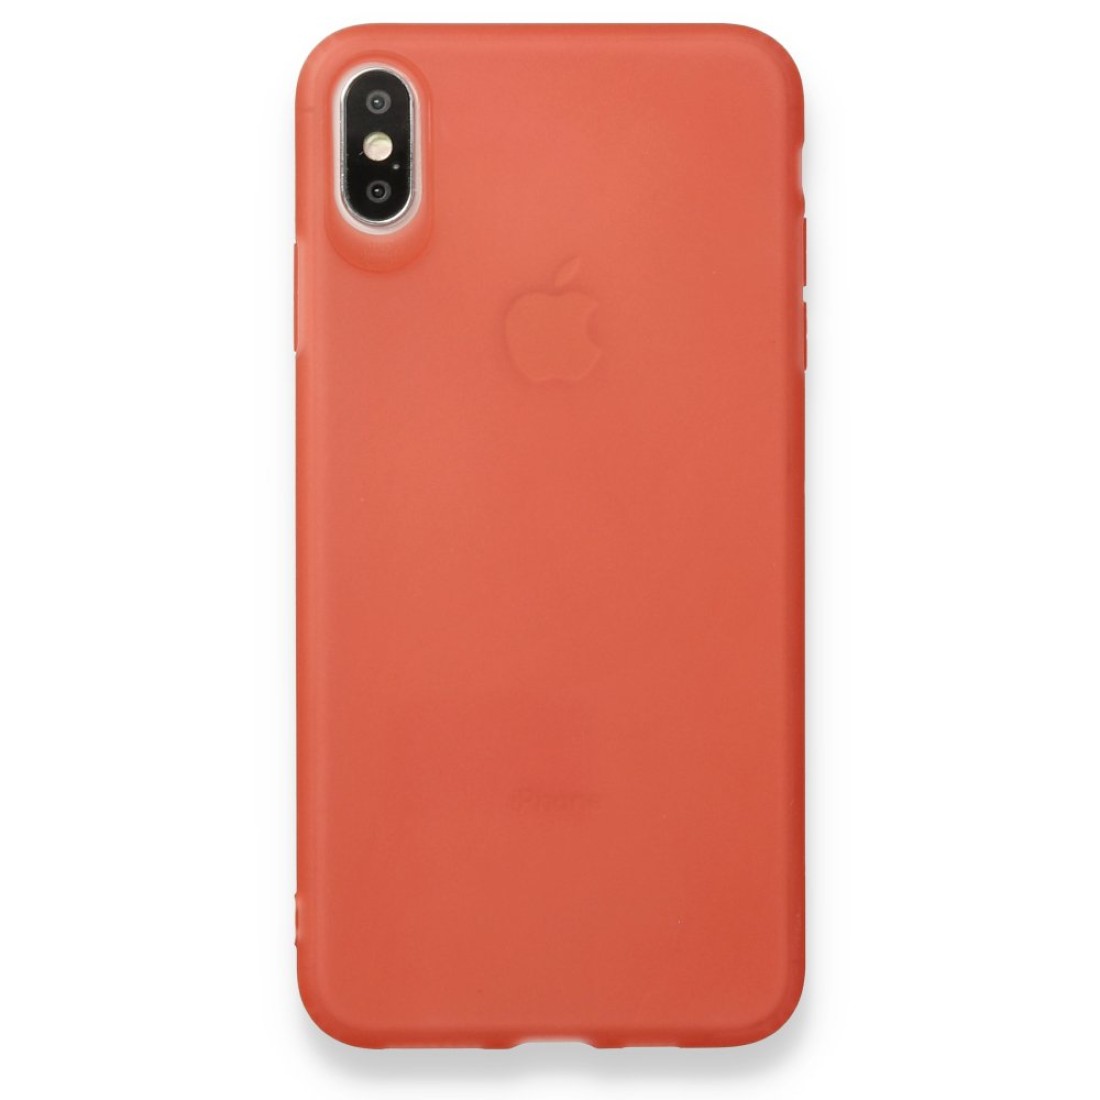 Apple iPhone X Kılıf Hopi Silikon - Kırmızı